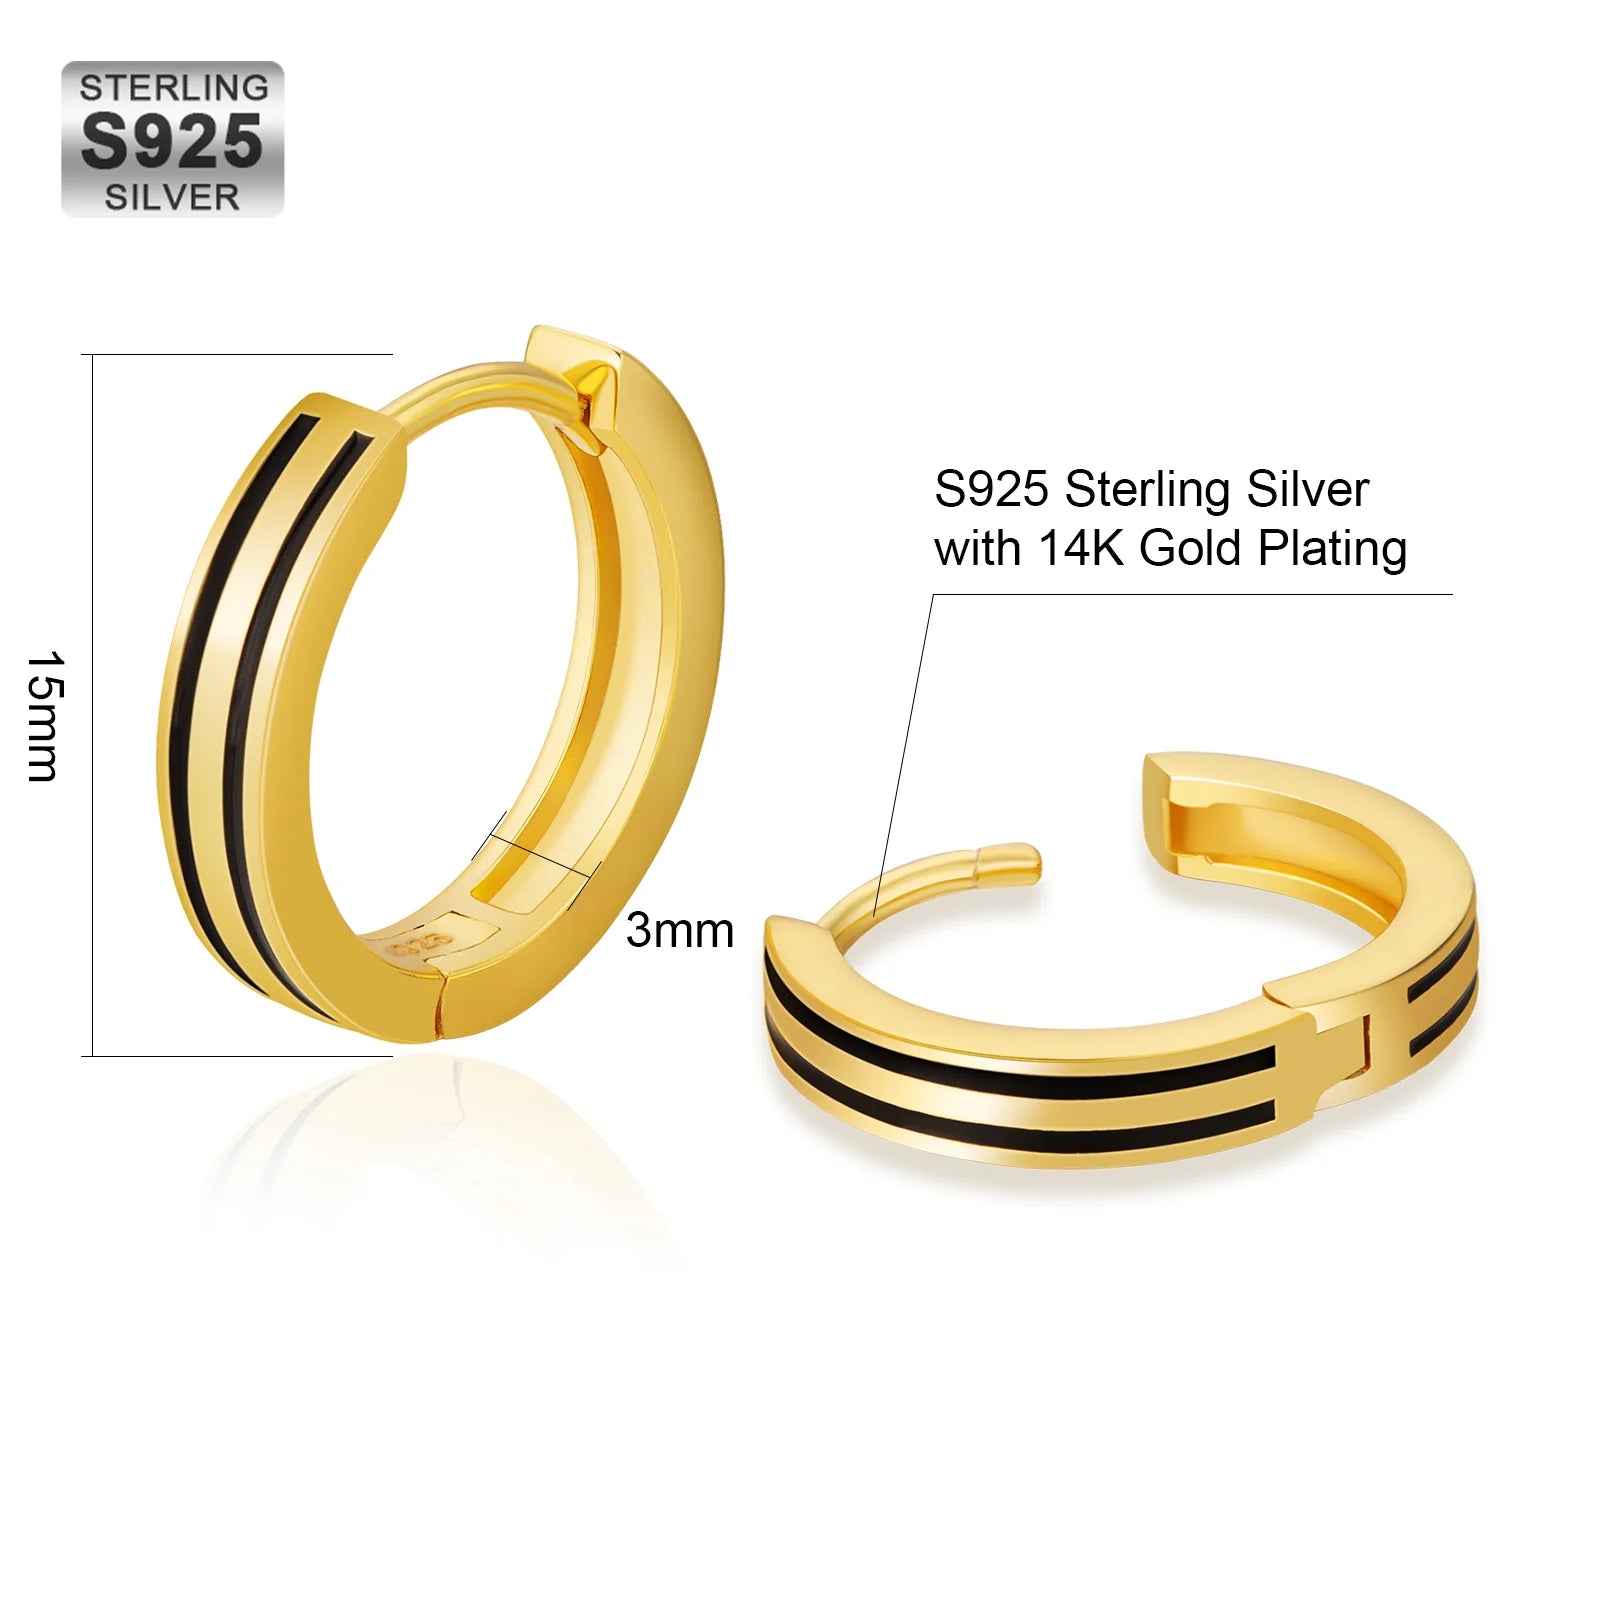 S925 Silver Black Stripe Hoop Earrings in 14K Gold - 15mm Earrings 